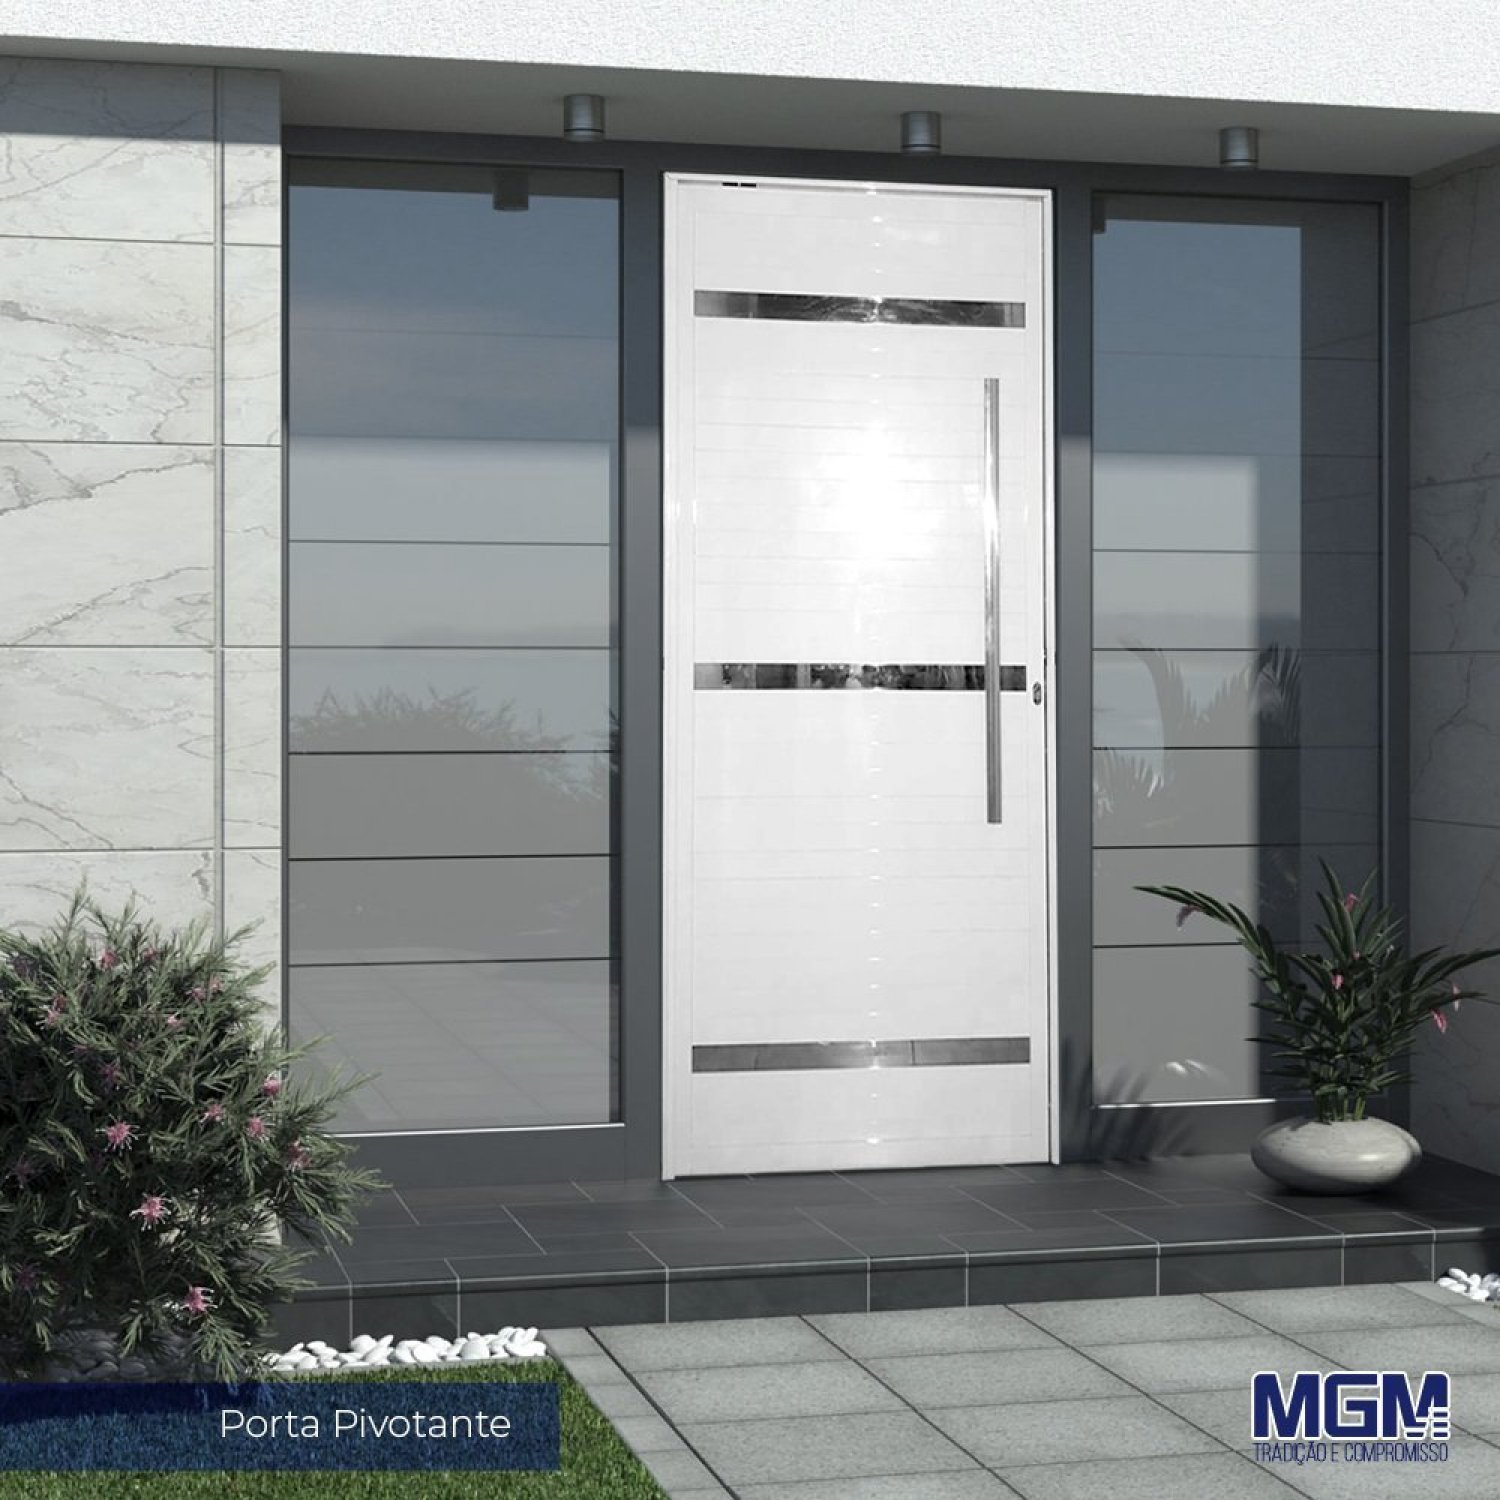 Porta de Aluminio Pivotante Branca com Frisos 220x110 MGM - 1